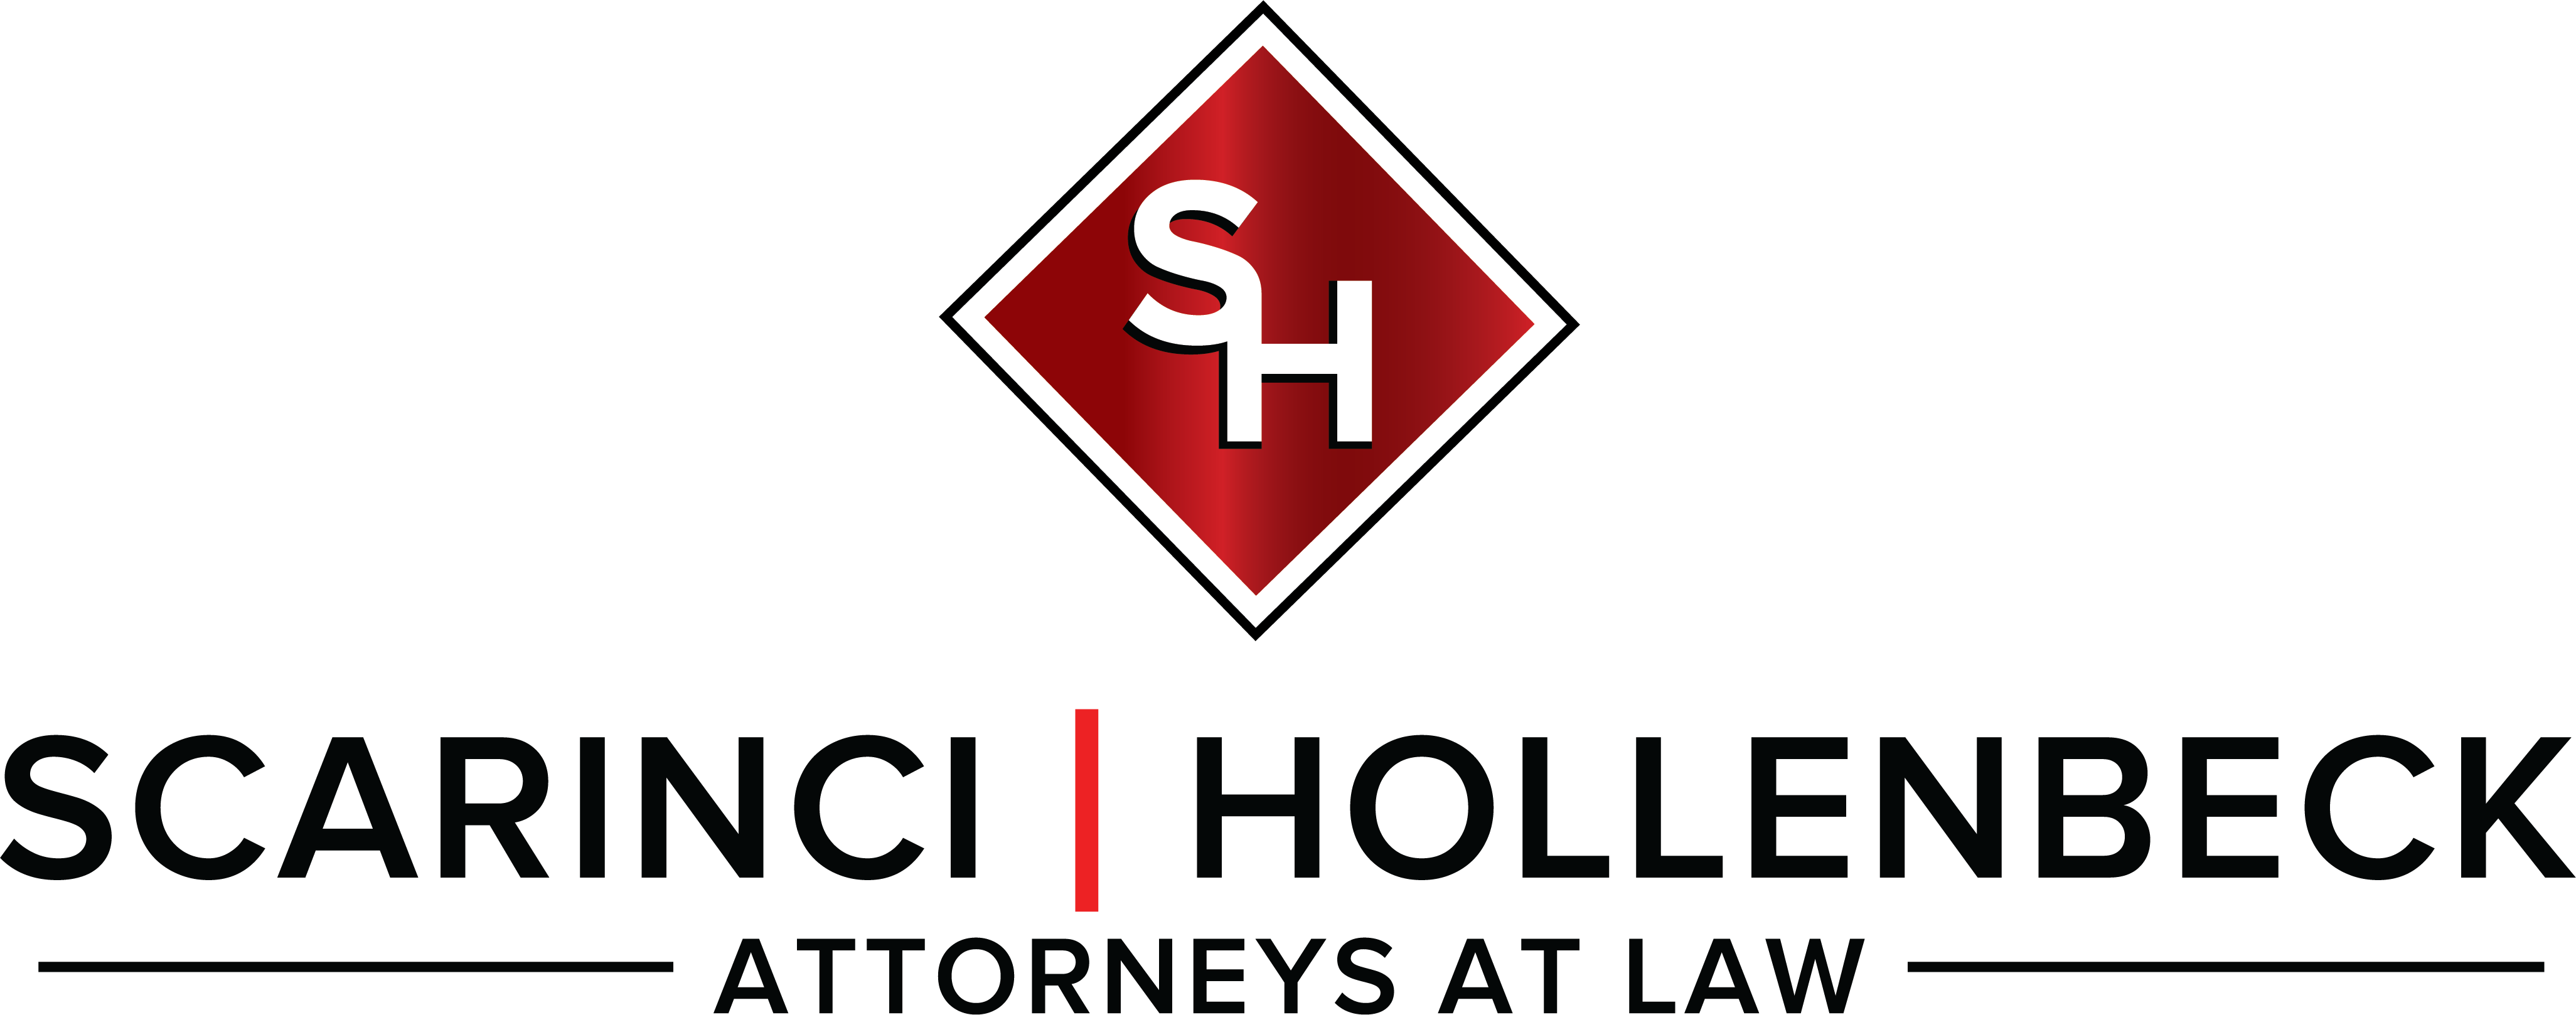 Scarinci Hollenbeck, LLC